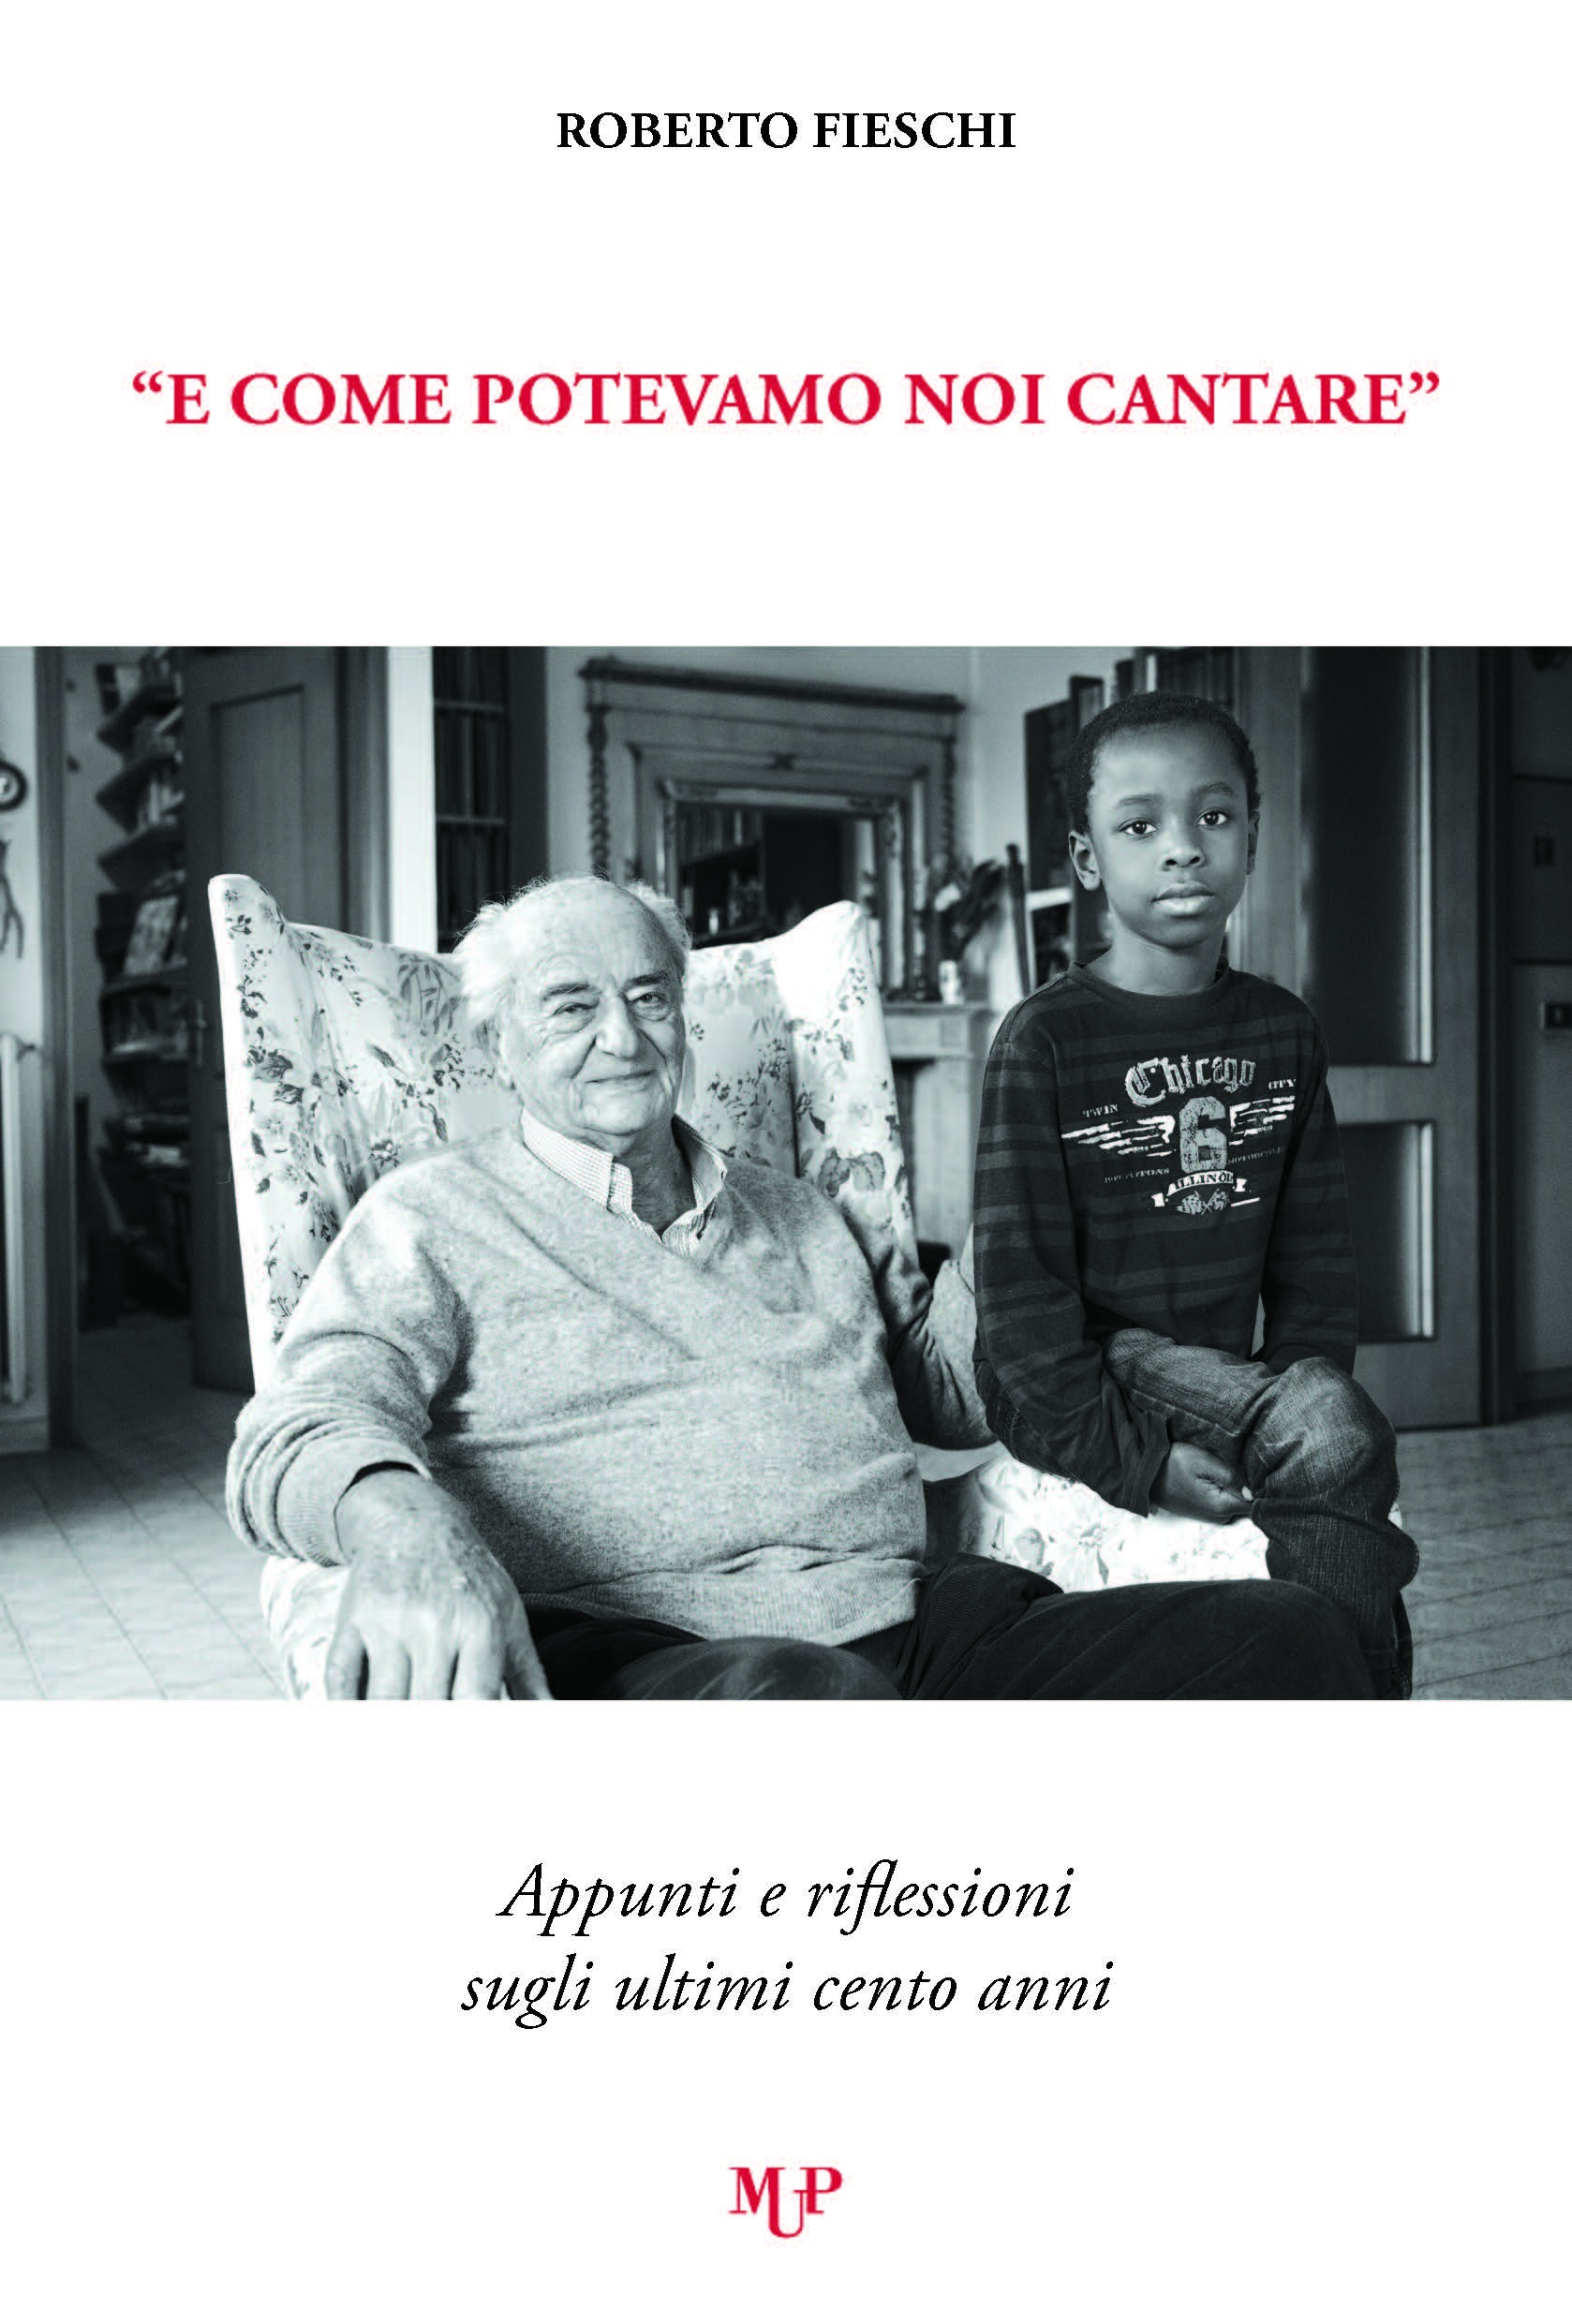 Presentazione del libro "E COME POTEVAMO NOI CANTARE" di Roberto Fieschi  all'APE Parma Museo